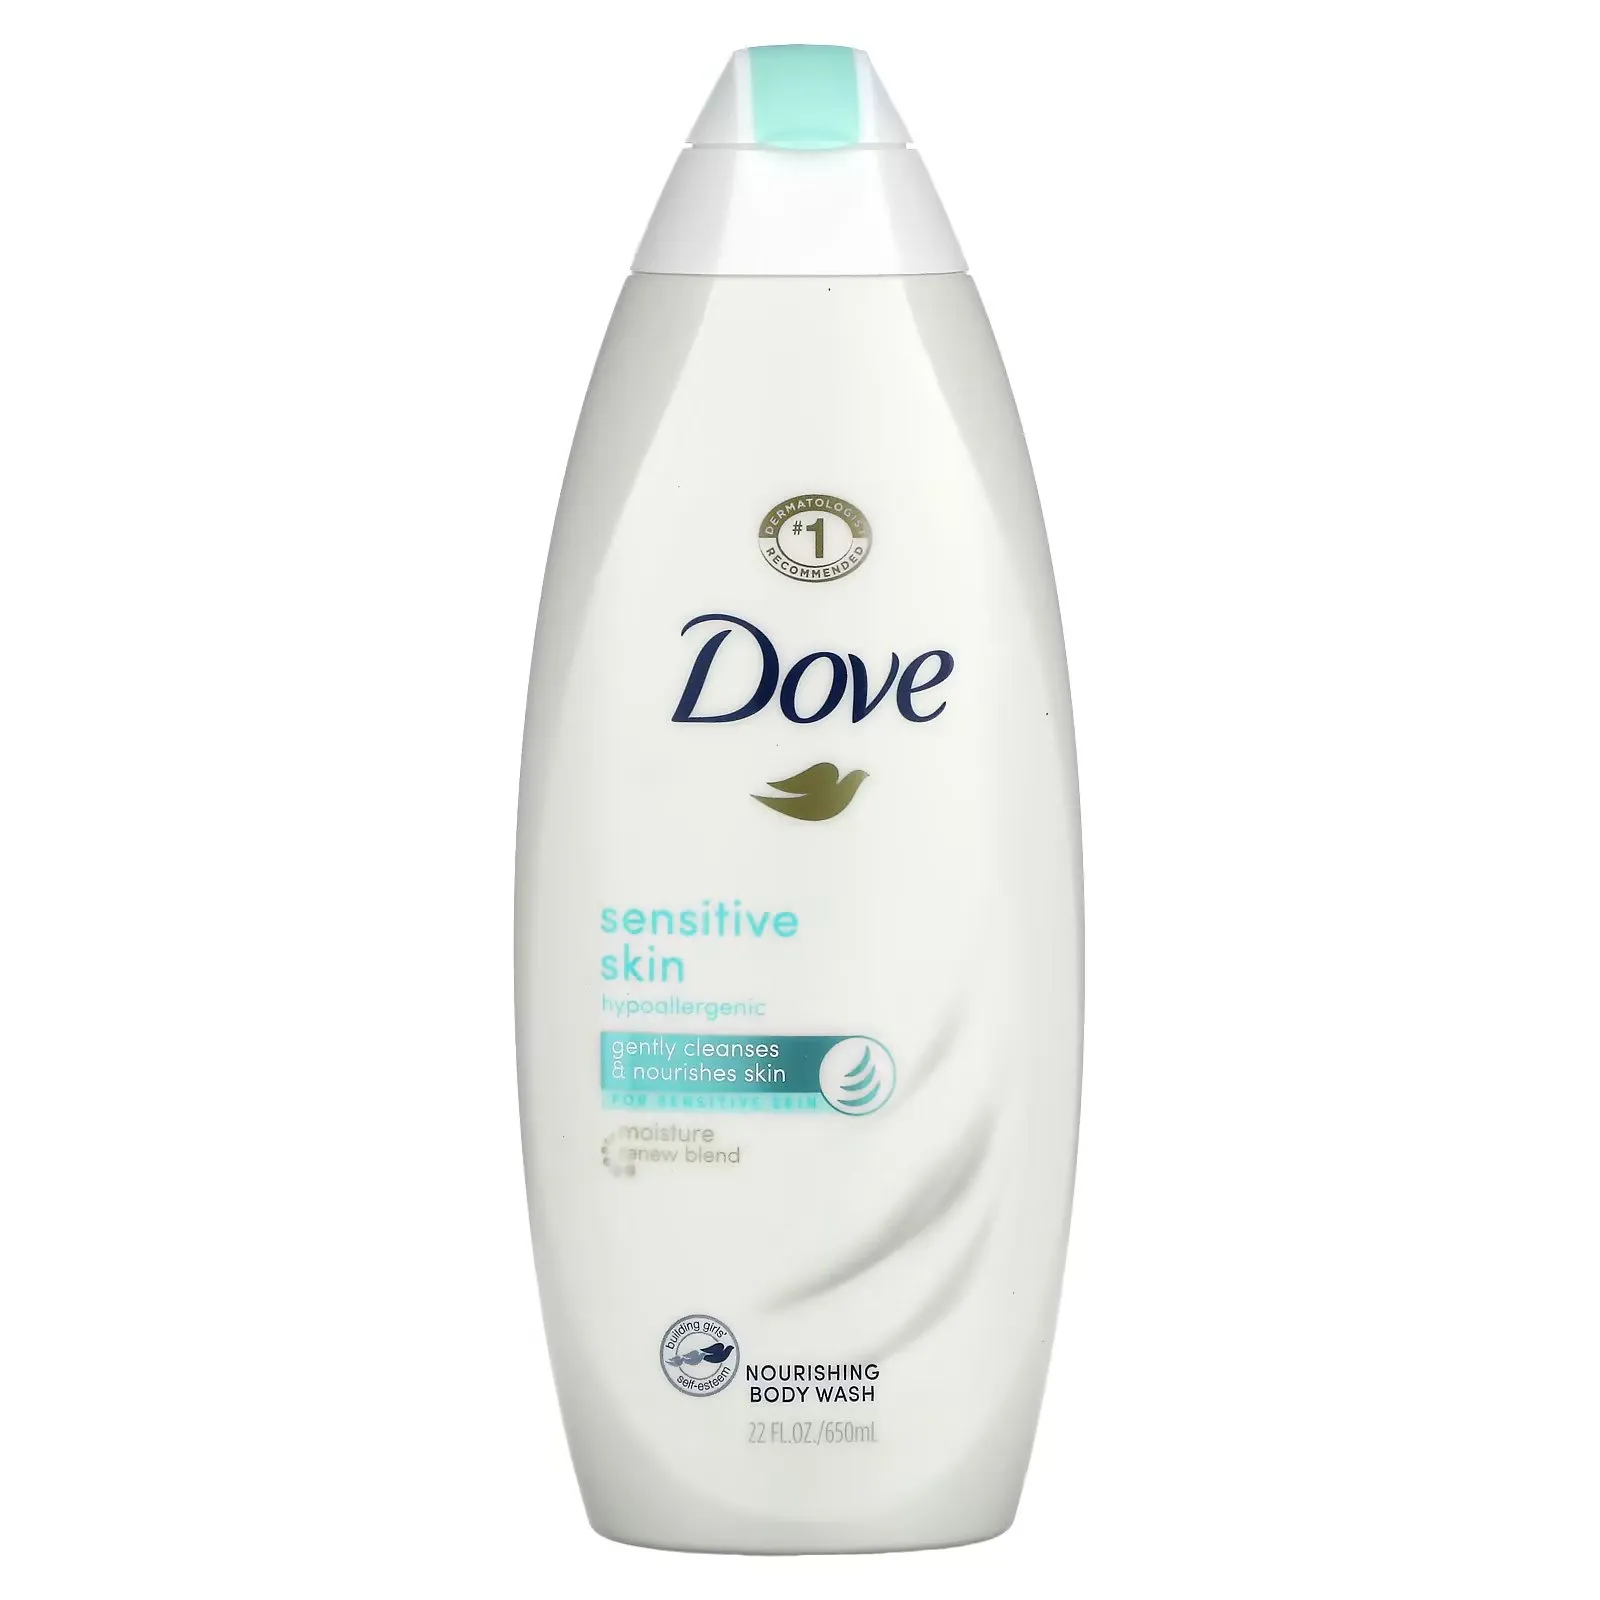 FEMMENORDIC's choice in the Aveeno vs Dove comparison, the Dove Sensitive Skin Body Wash